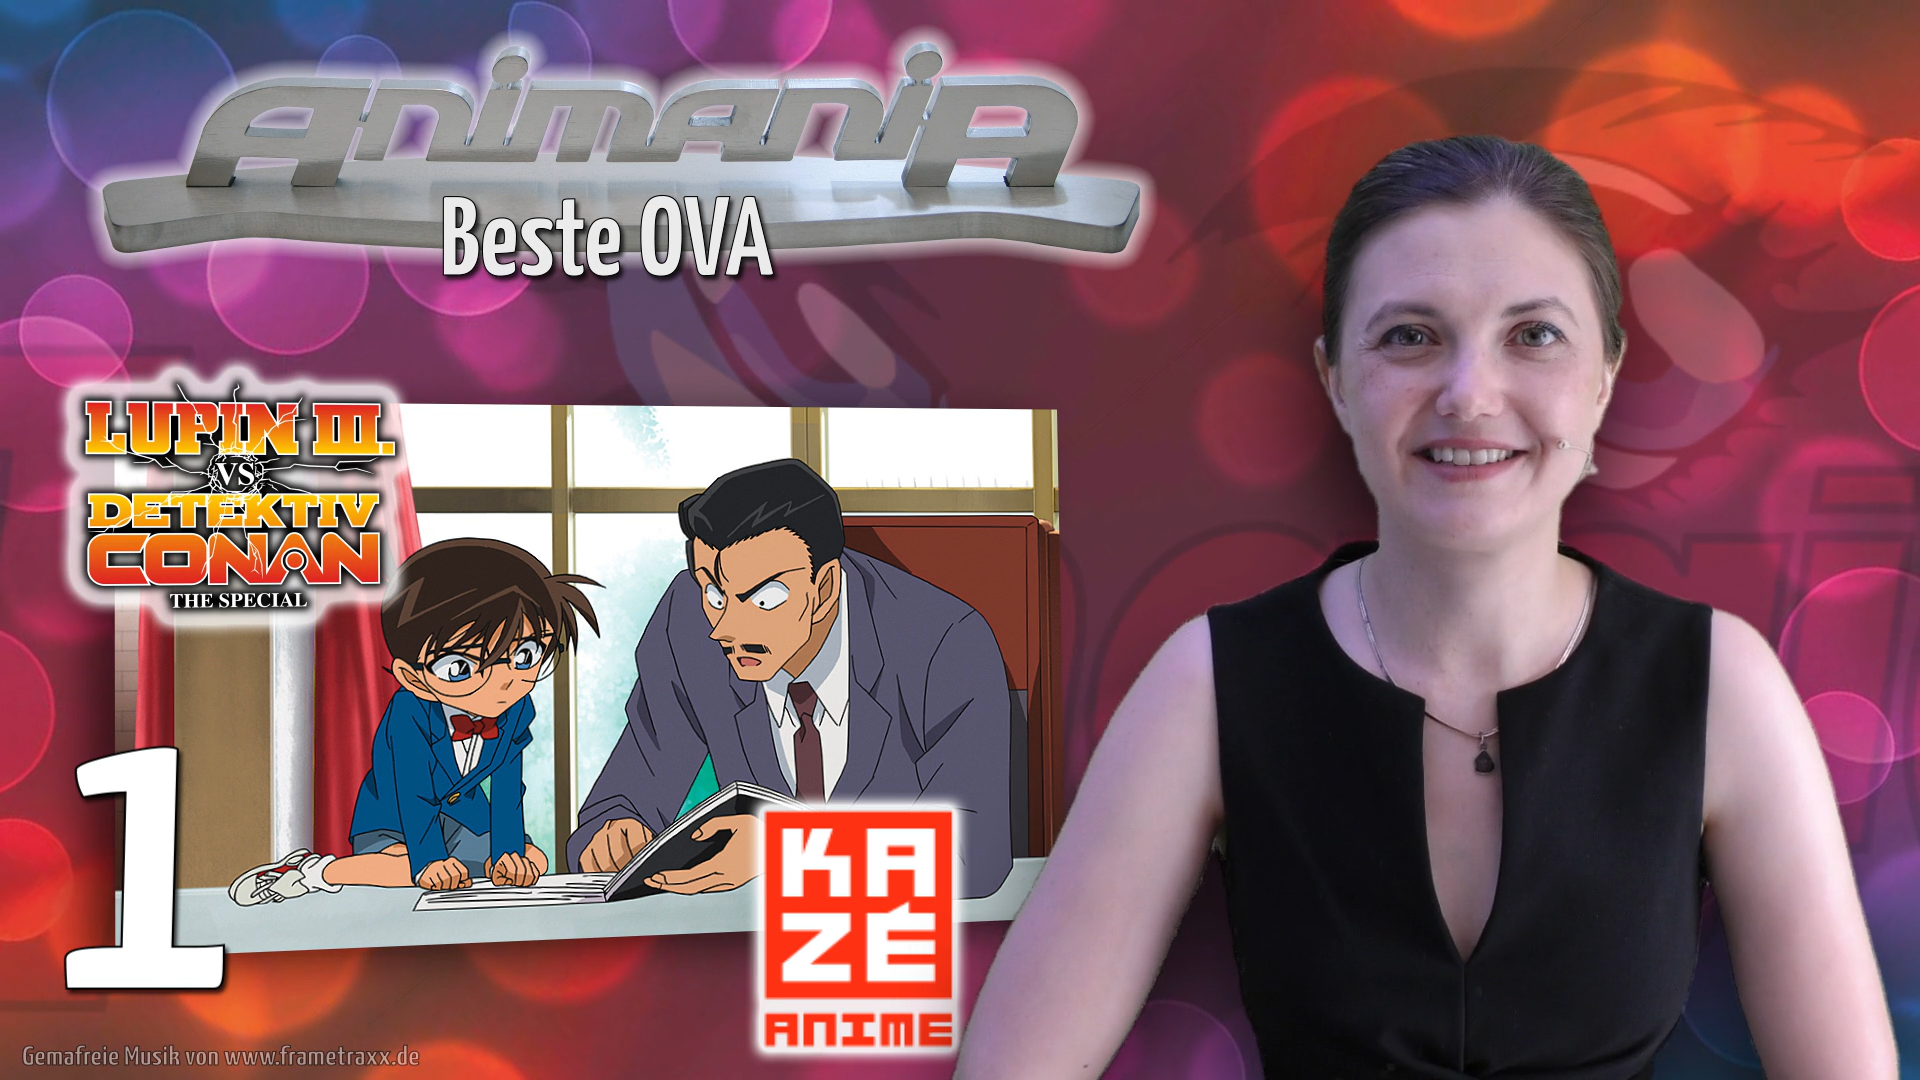 Beste OVA 2020: Detektiv Conan gewinnt